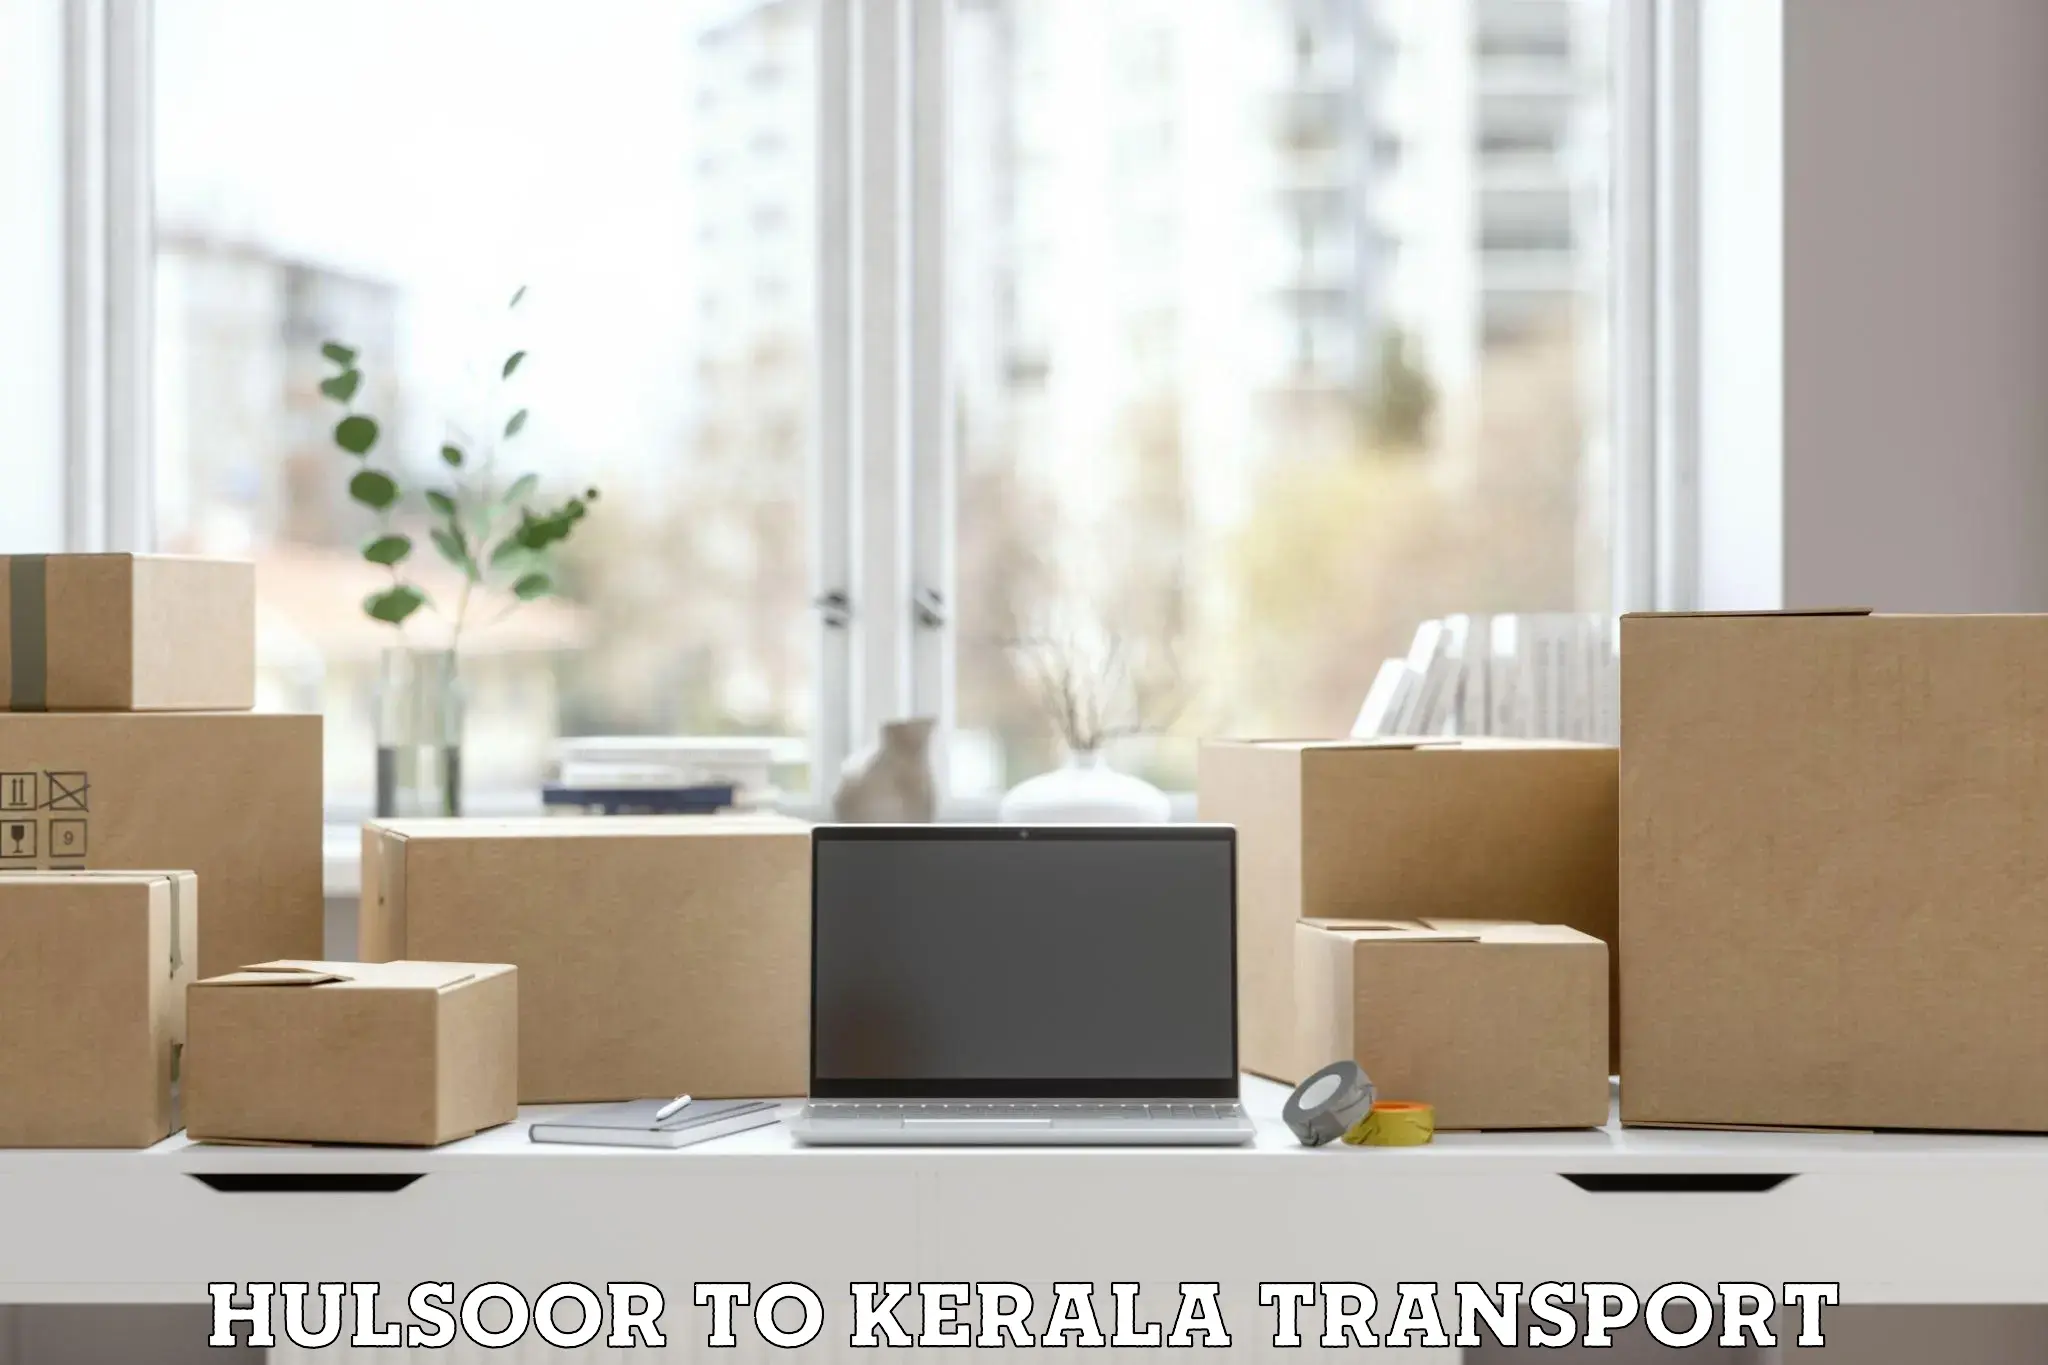 International cargo transportation services Hulsoor to Kothanalloor